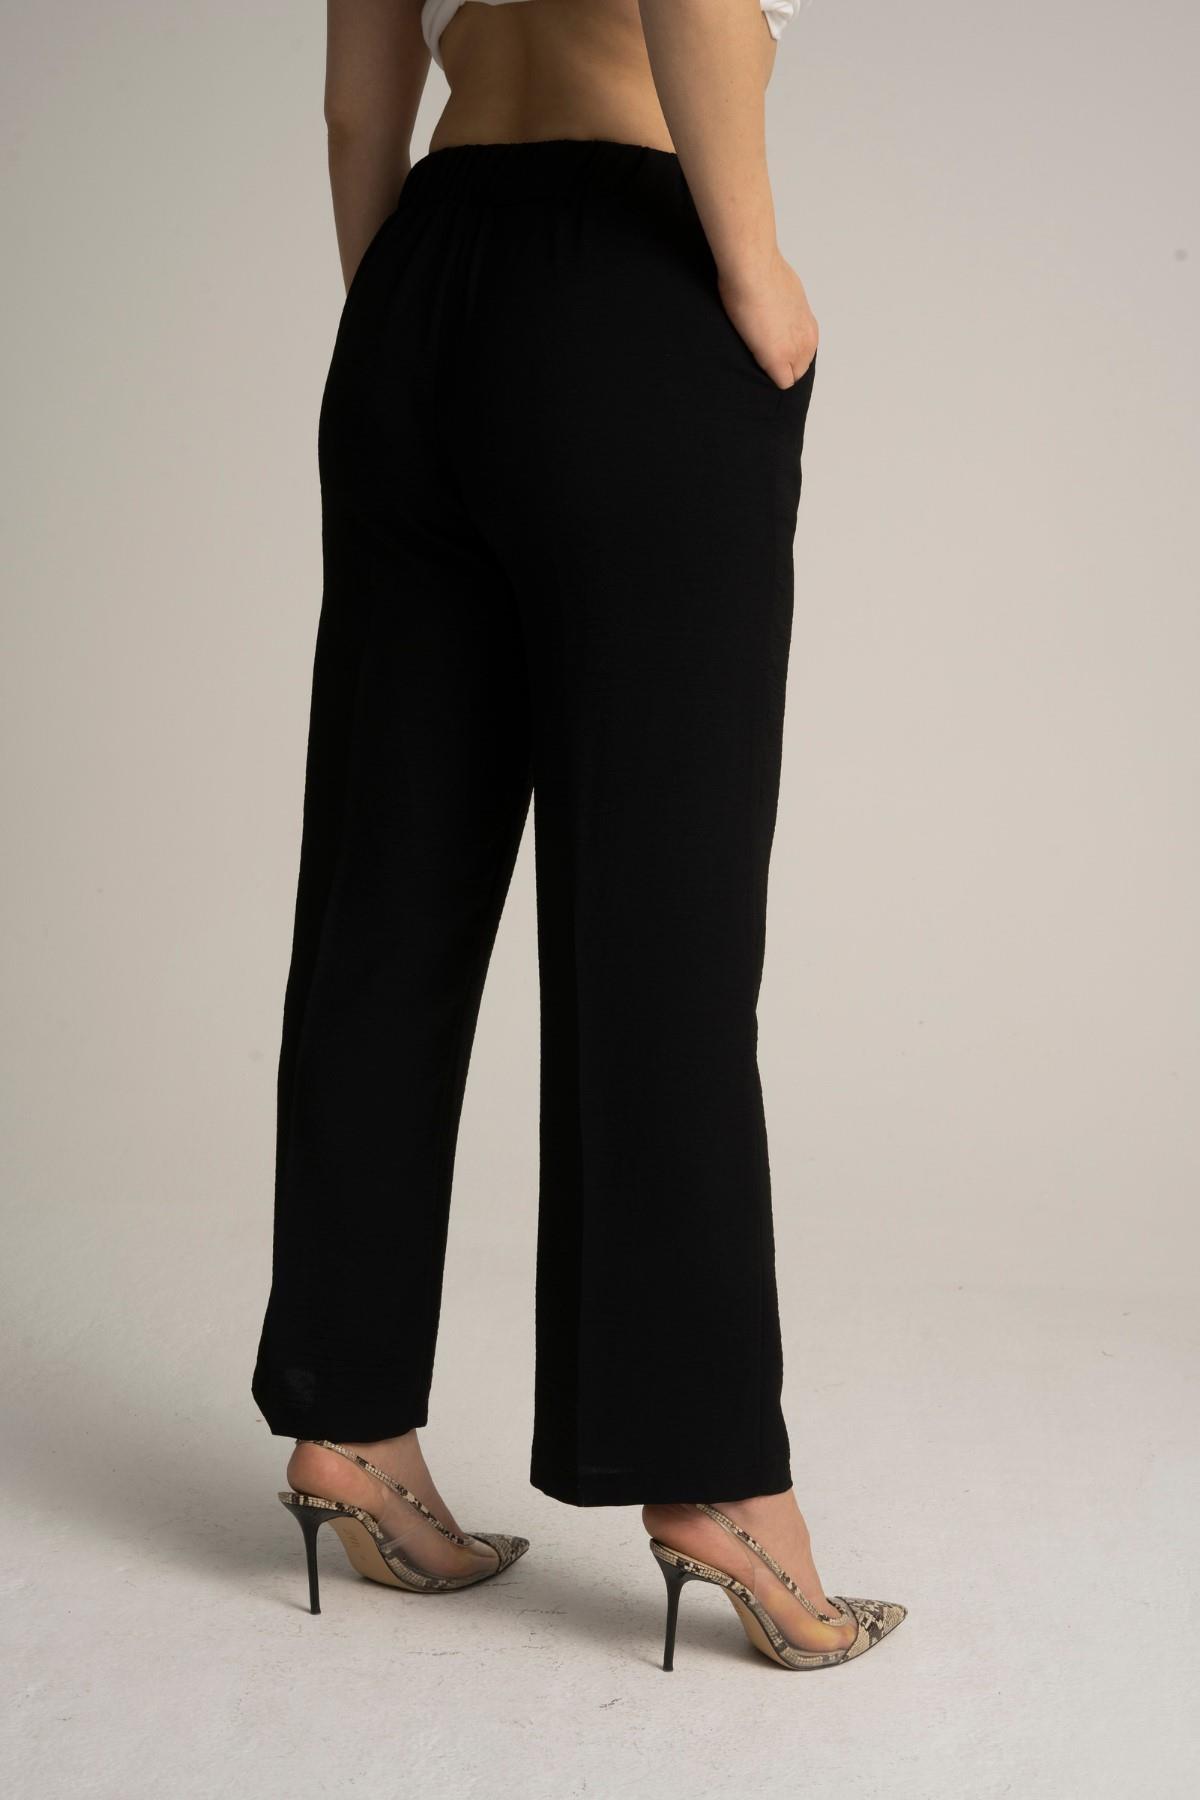 Kadın Büyük Beden Beli Lastikli Bol Paça Salaş Yazlık Siyah Renk Pantolon